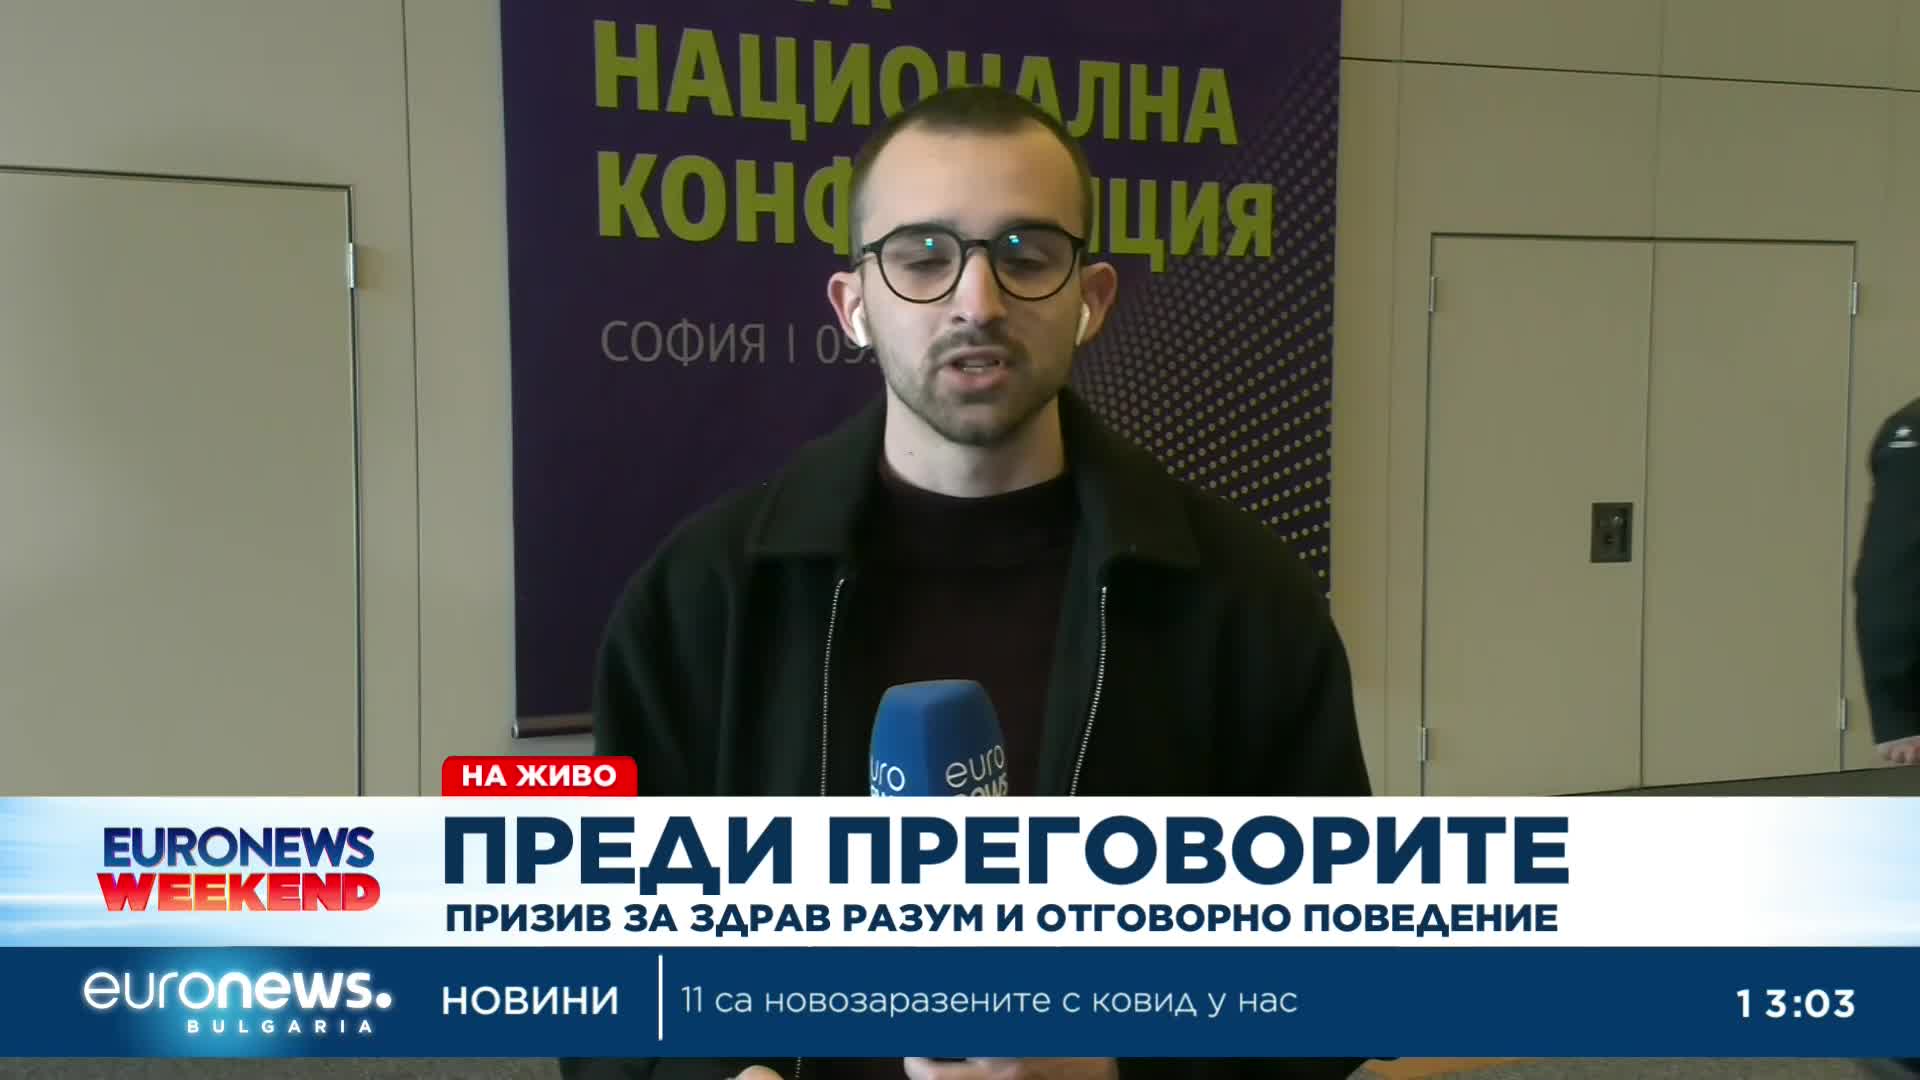 Христо Иванов: Първо трябва да обсъдим реформите, а след това министерските постове